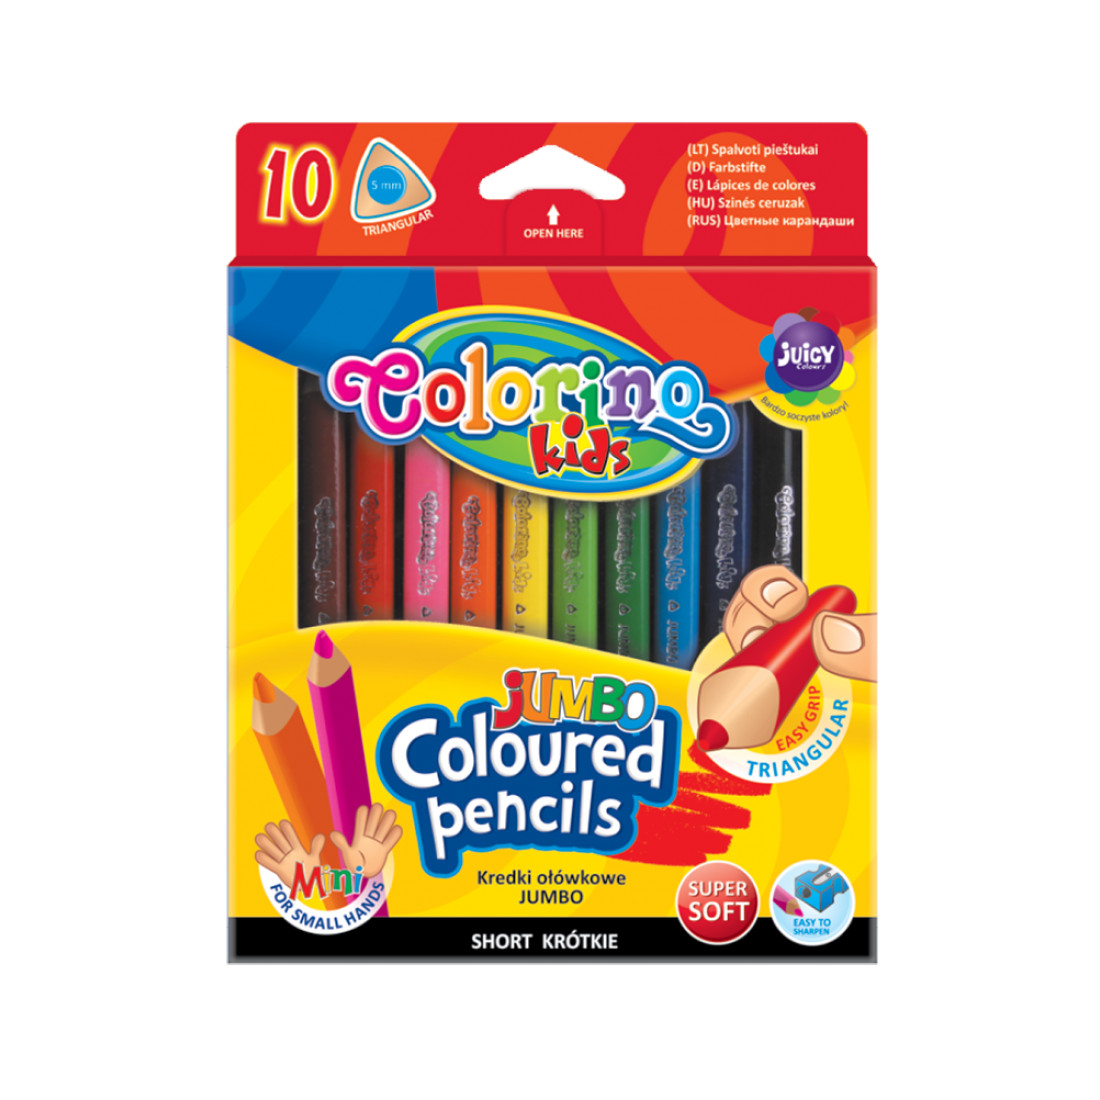 Набор карандашей цветных Colorino JUMBO mini, 10 цветов, с точилкой карандаши ные 10цв jumbo с точилкой утолщённые трехгранные к к подвес hatber